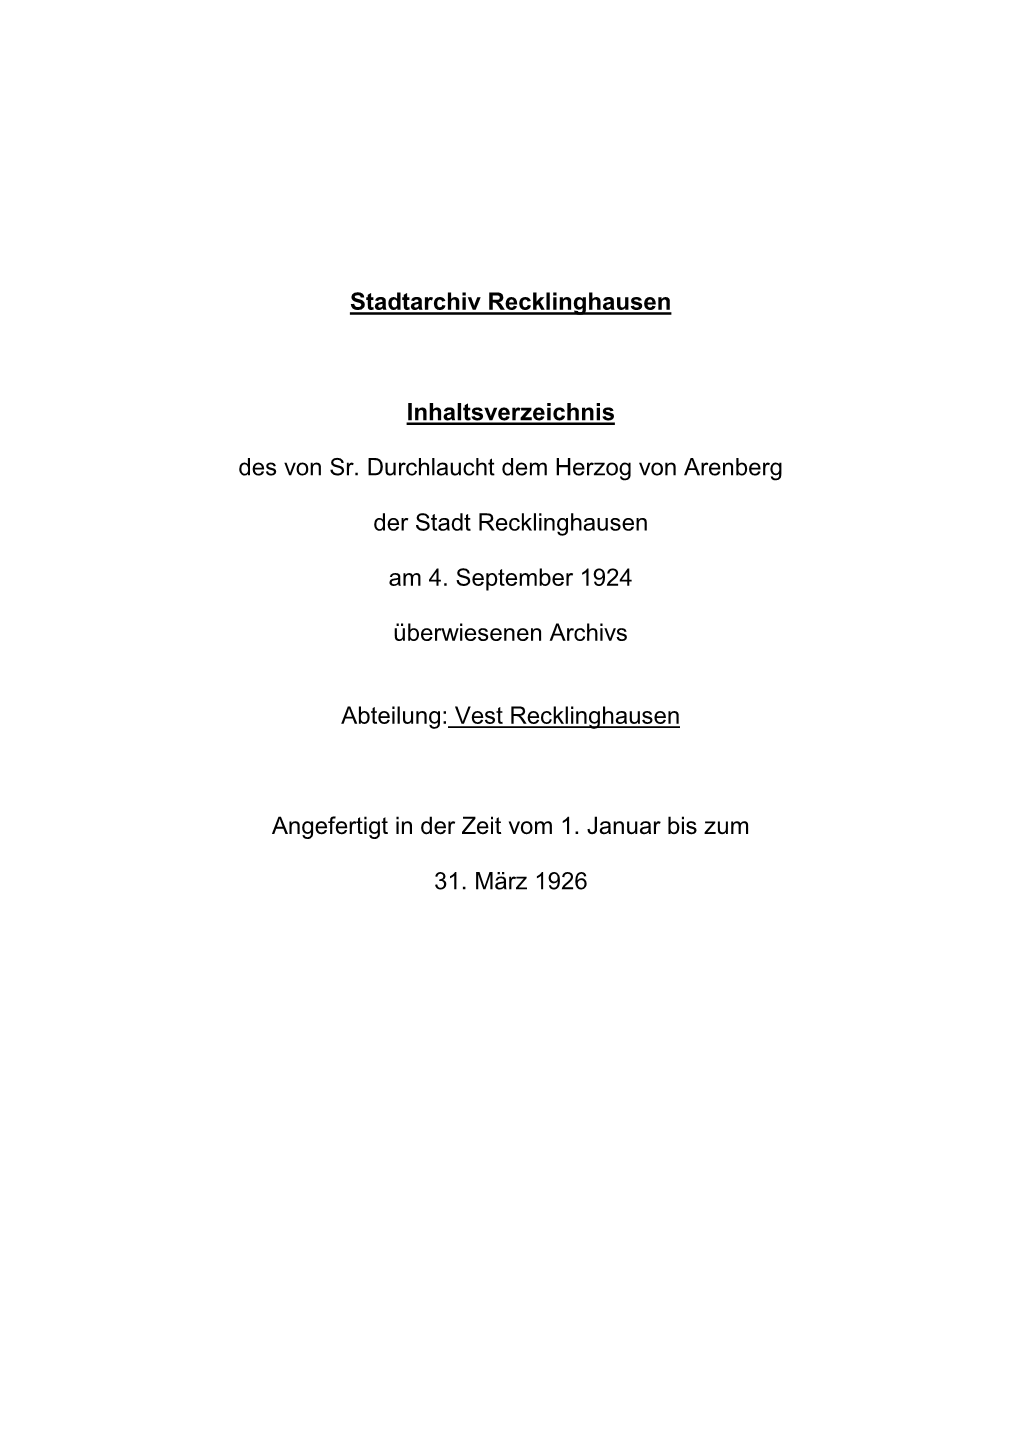 Findbuch Herzoglich Arenbergisches Archiv (I